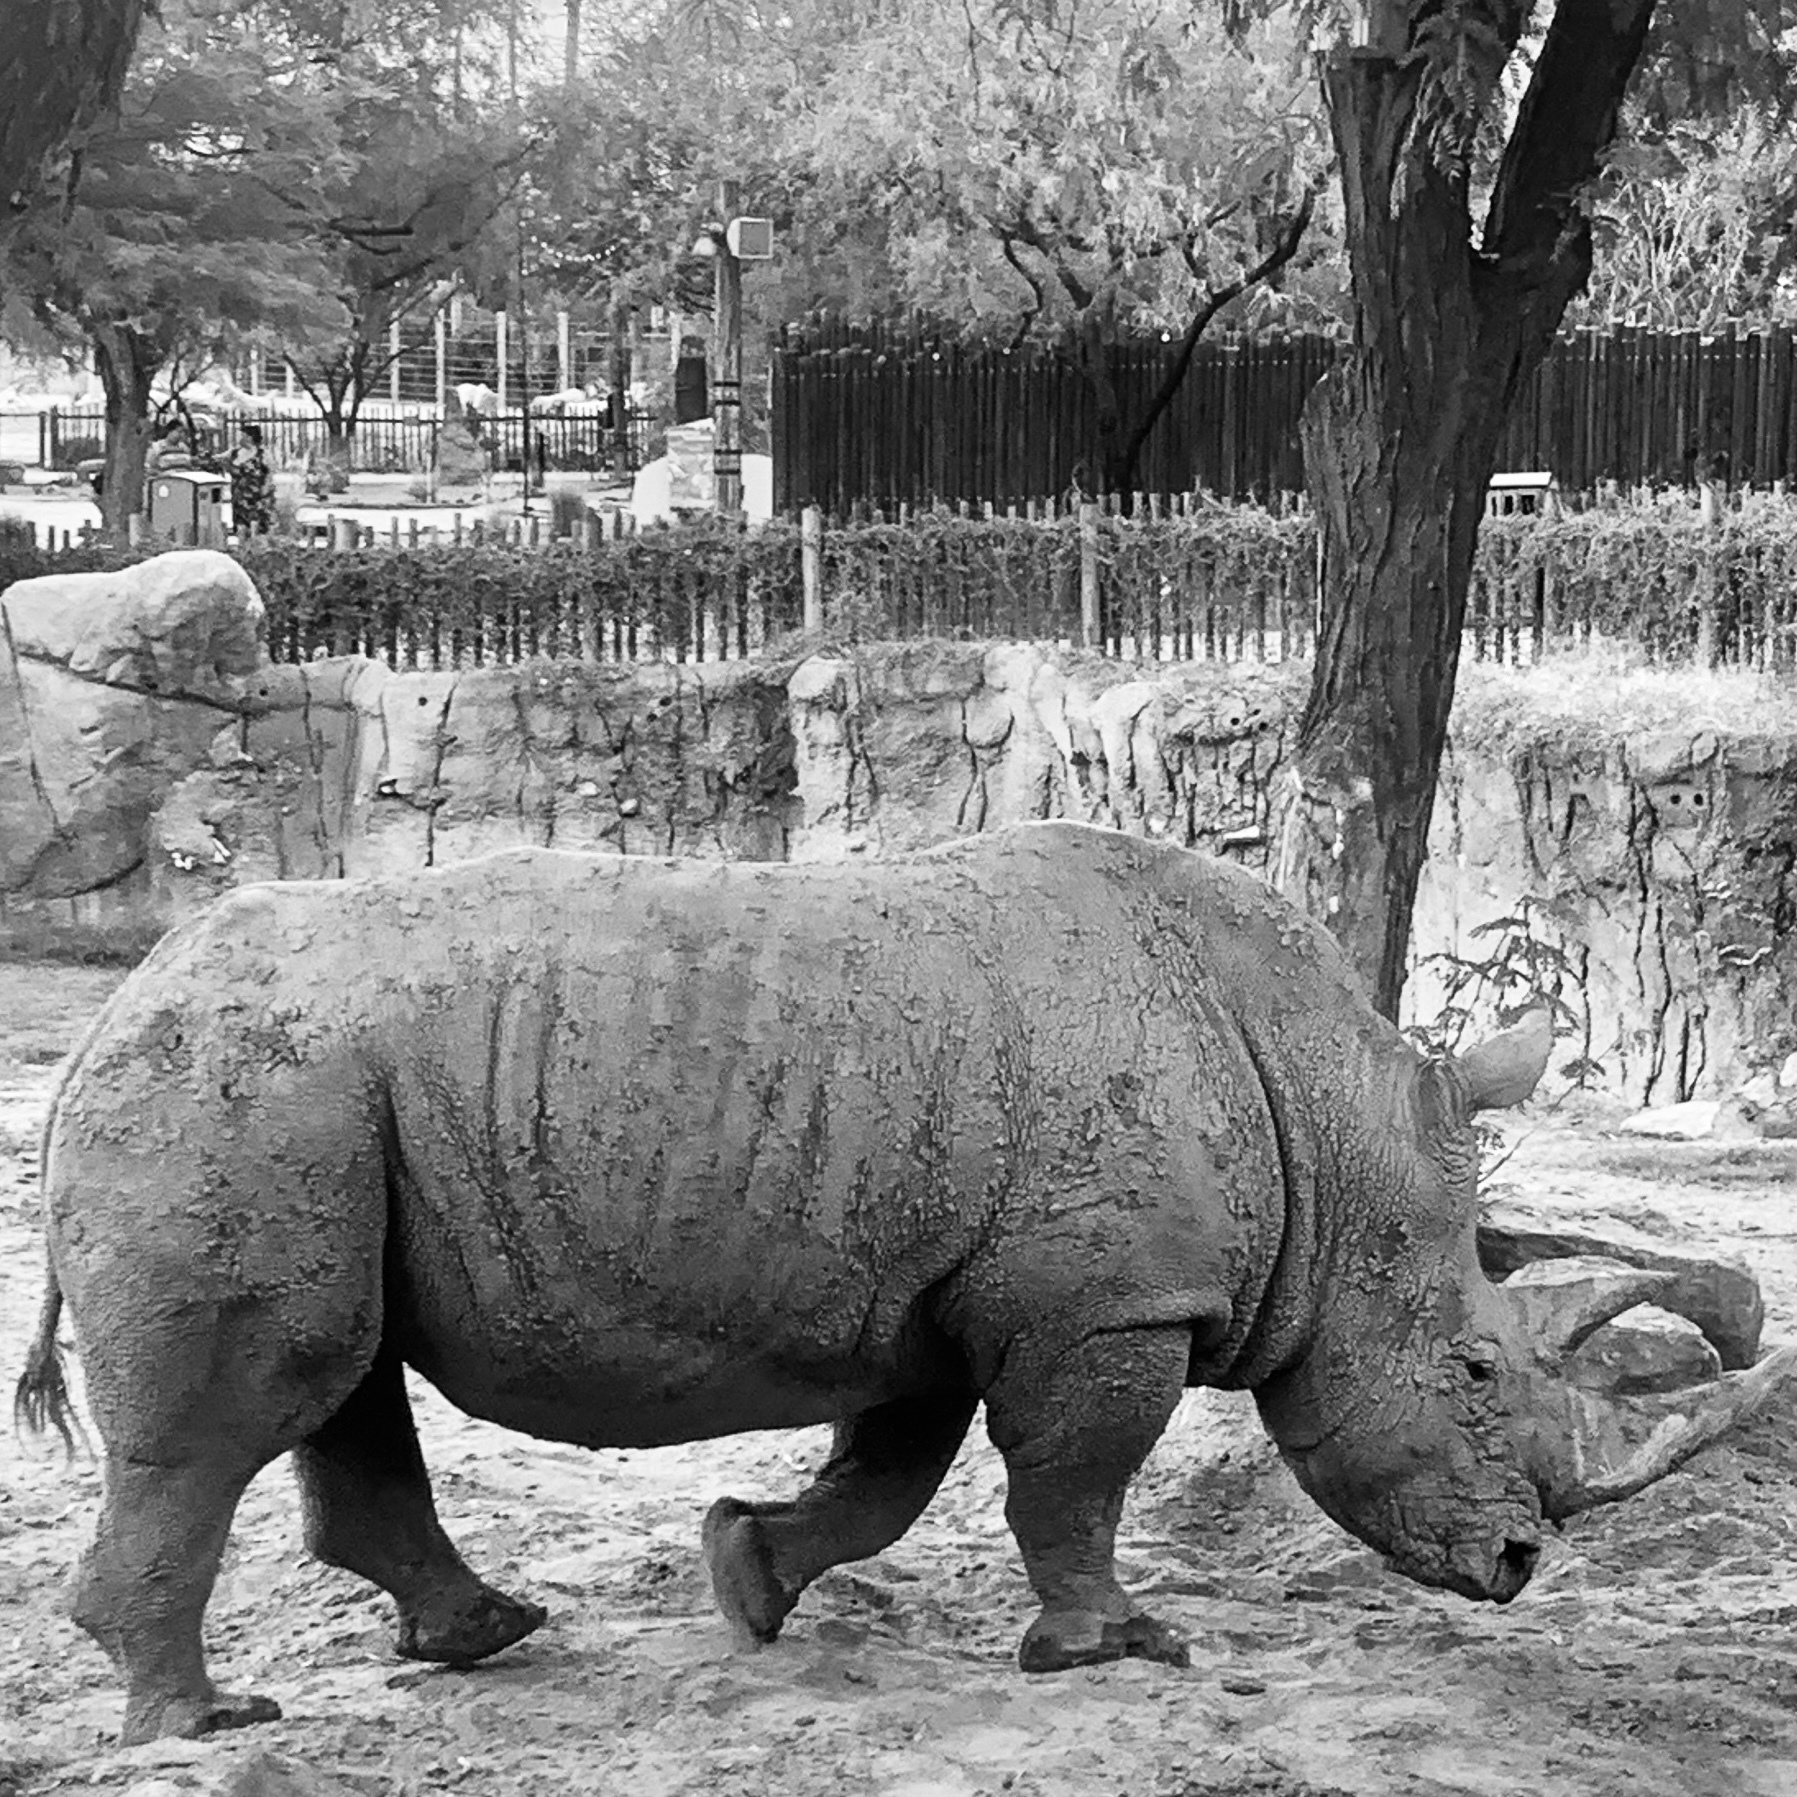 A rhinoceros